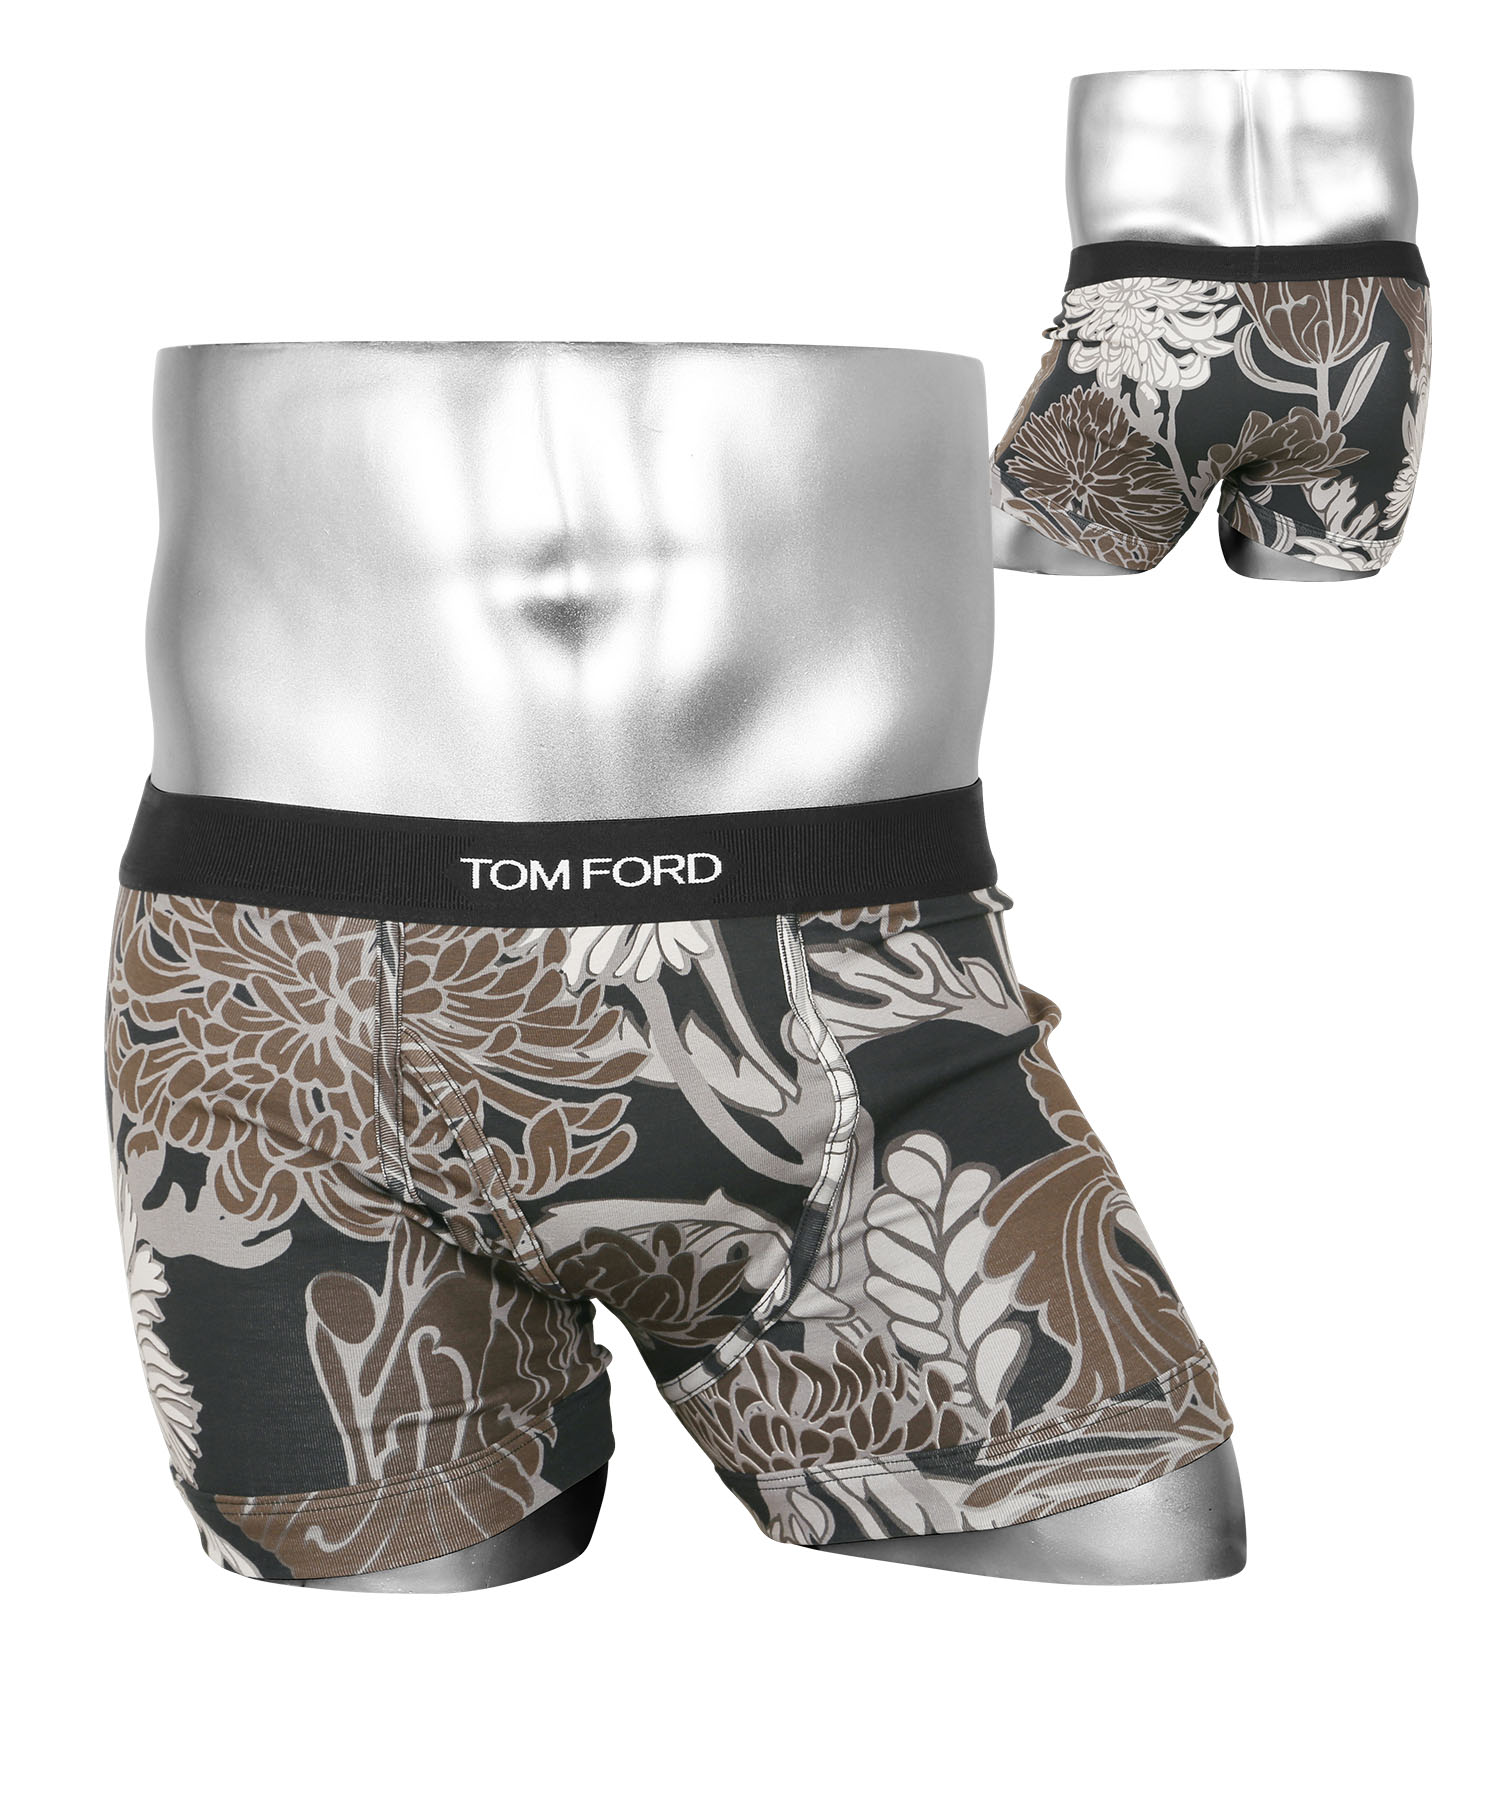 トムフォード TOM FORD ボクサーパンツ メンズ アンダーウェア 綿混 コットン 前開き ロゴ 高級 ハイブランド プレゼント ギフト